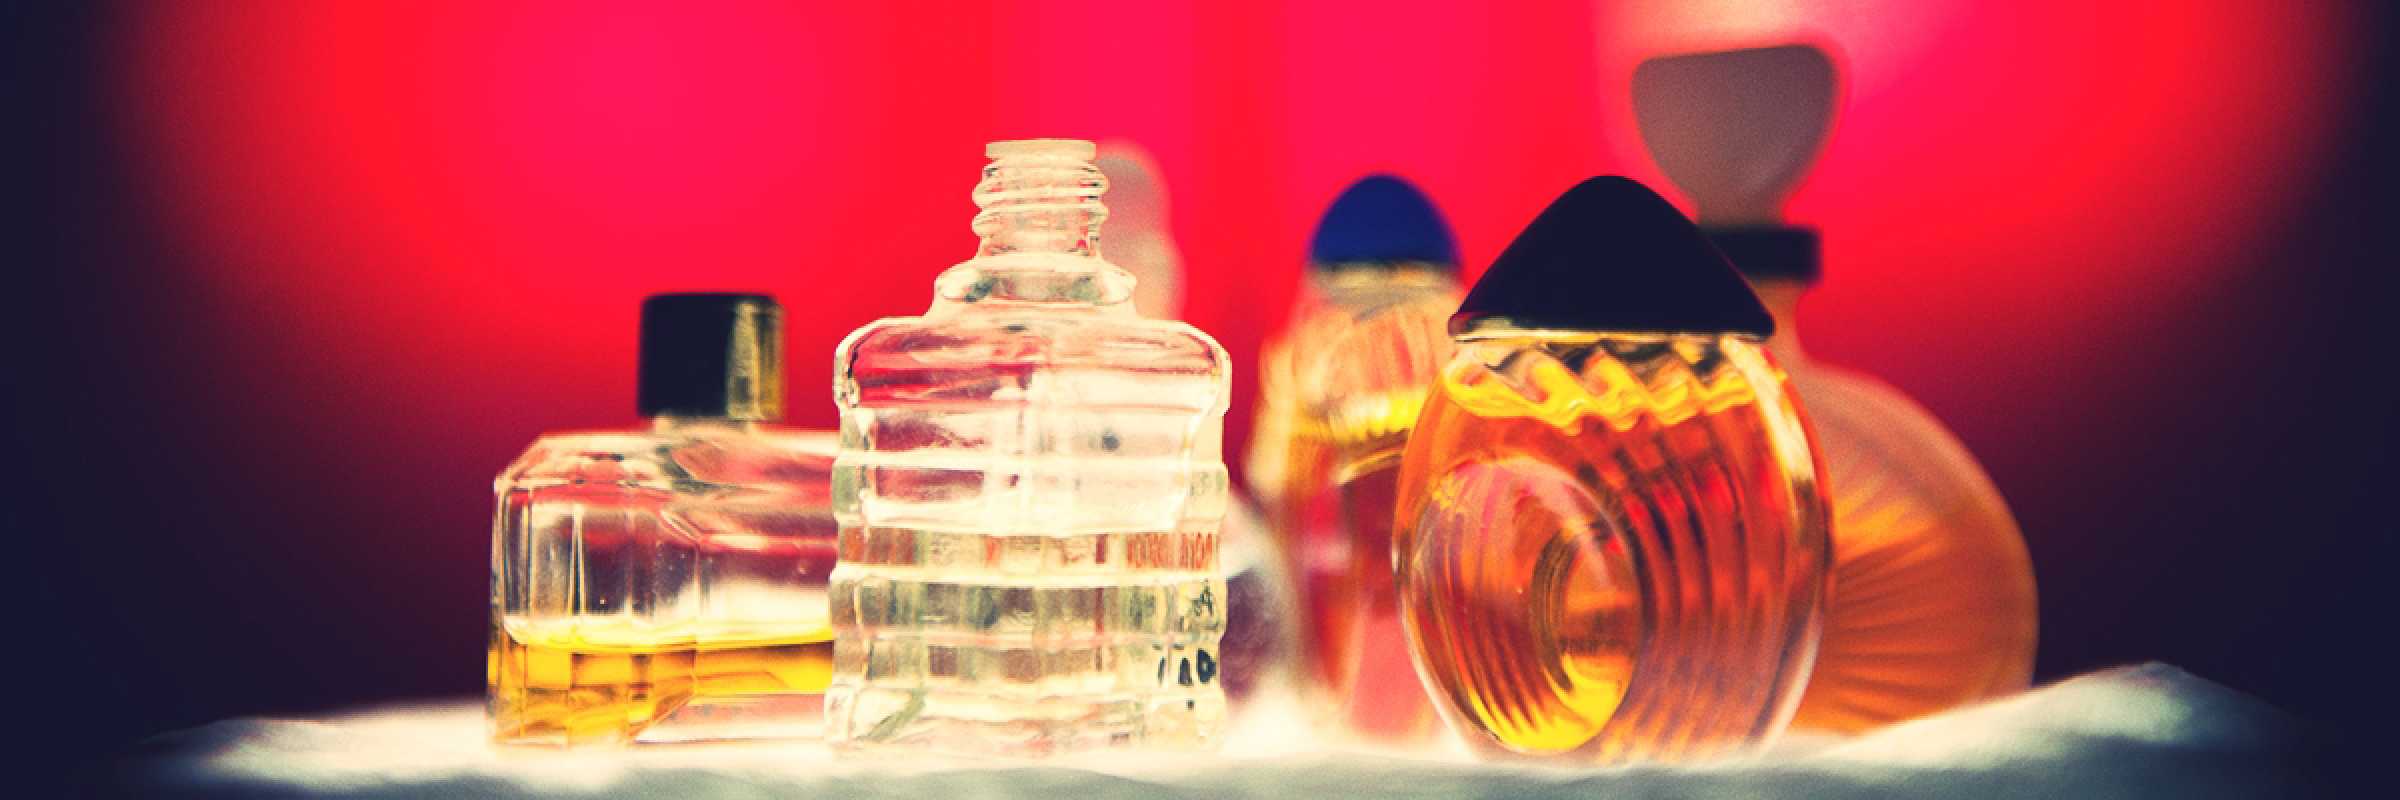 Perfume bottles.